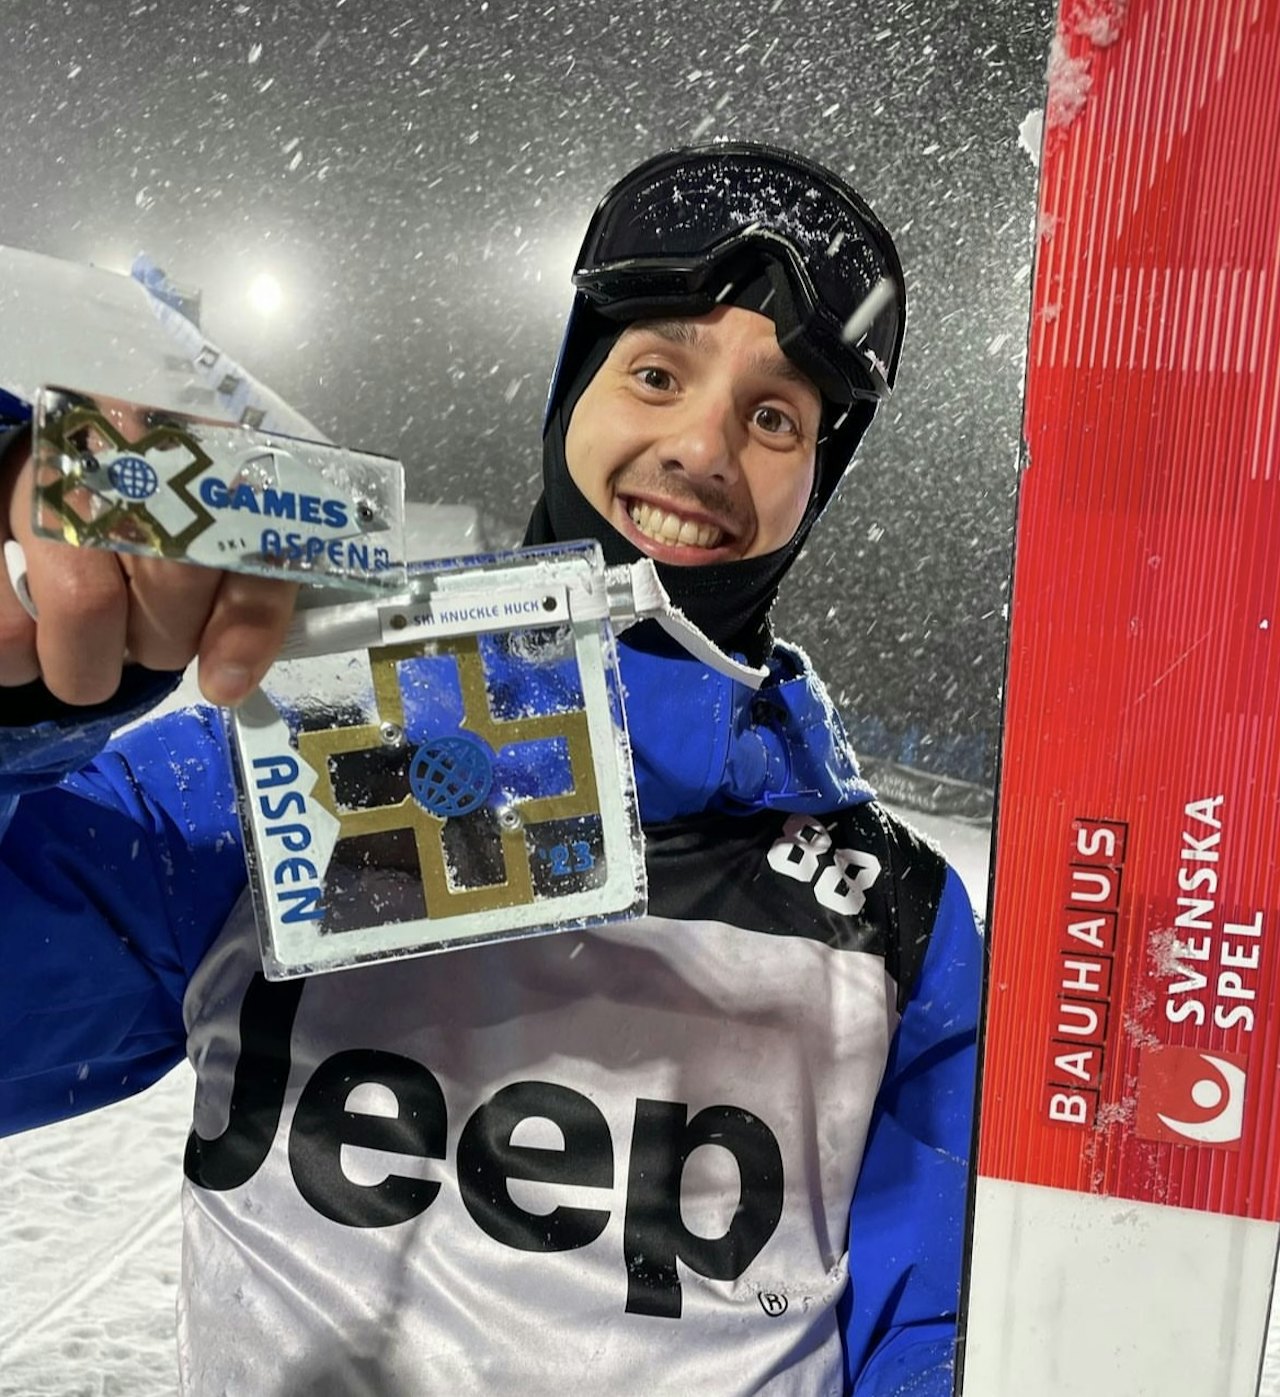 VANT: Jesper Tjäder tok natt til lørdag sin første X Games medalje, et gull i Knuckle Huck. Foto: Freeski Sweden